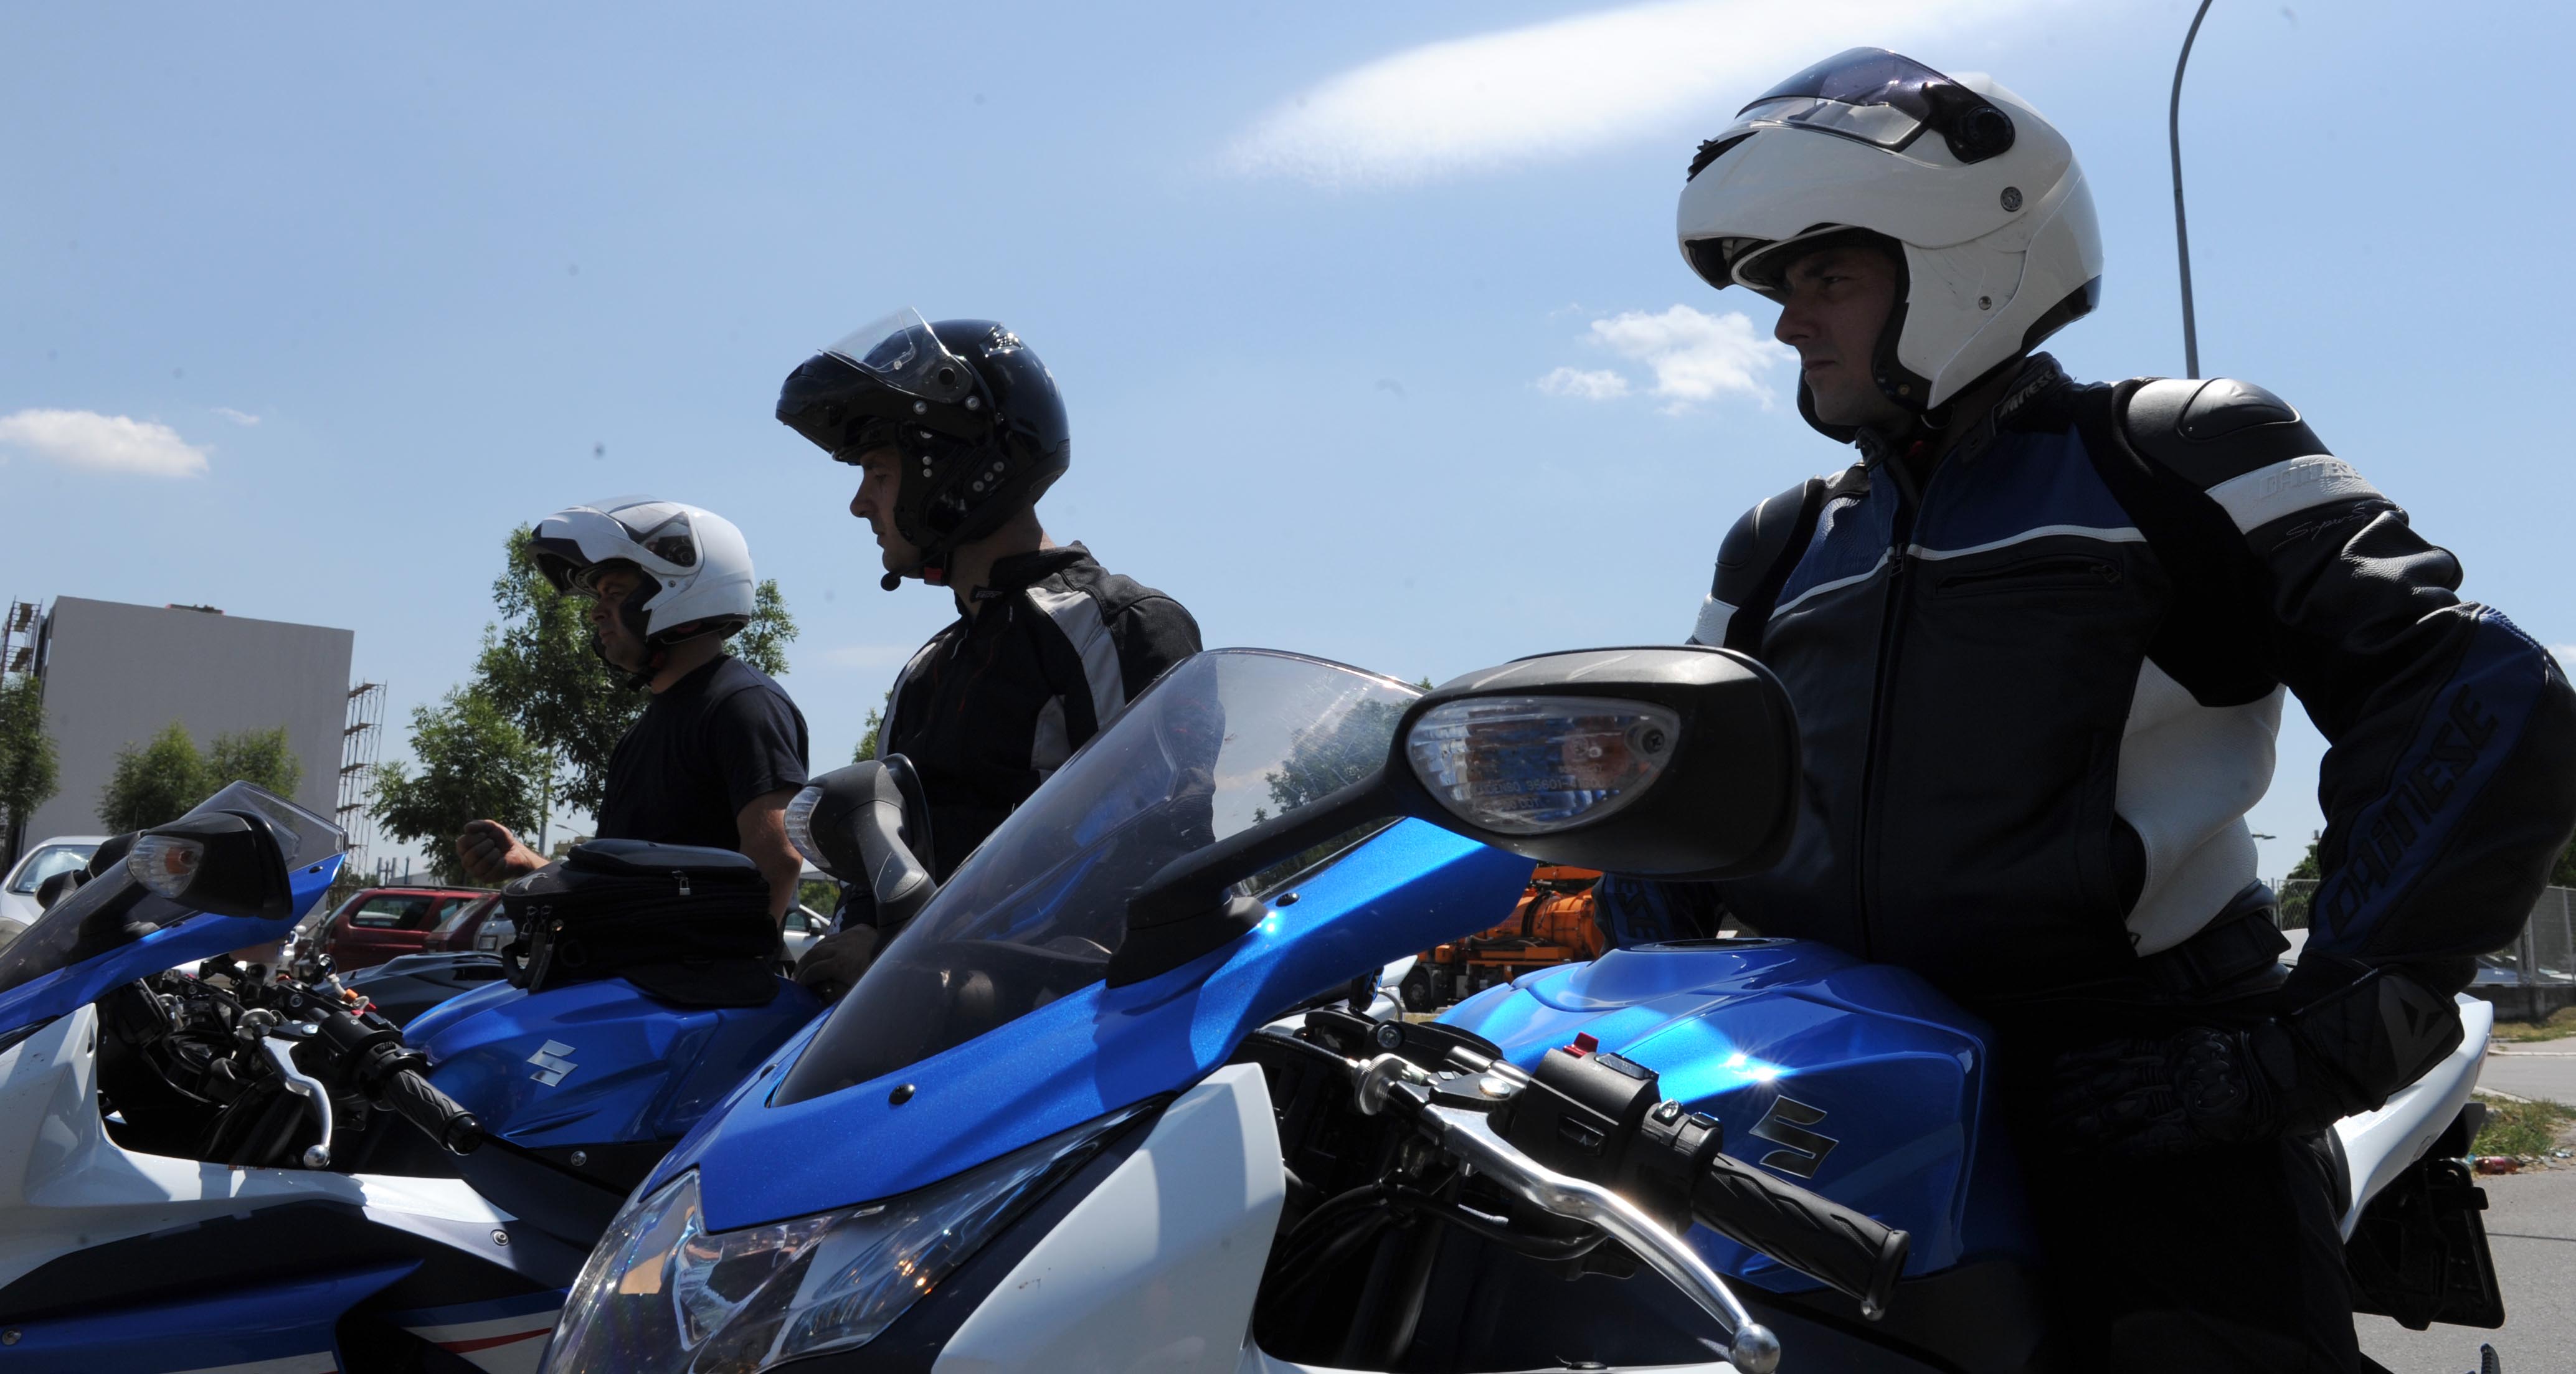 Мотоциклисти пресретачи током маја и јуна открили више од 300 прекршаја